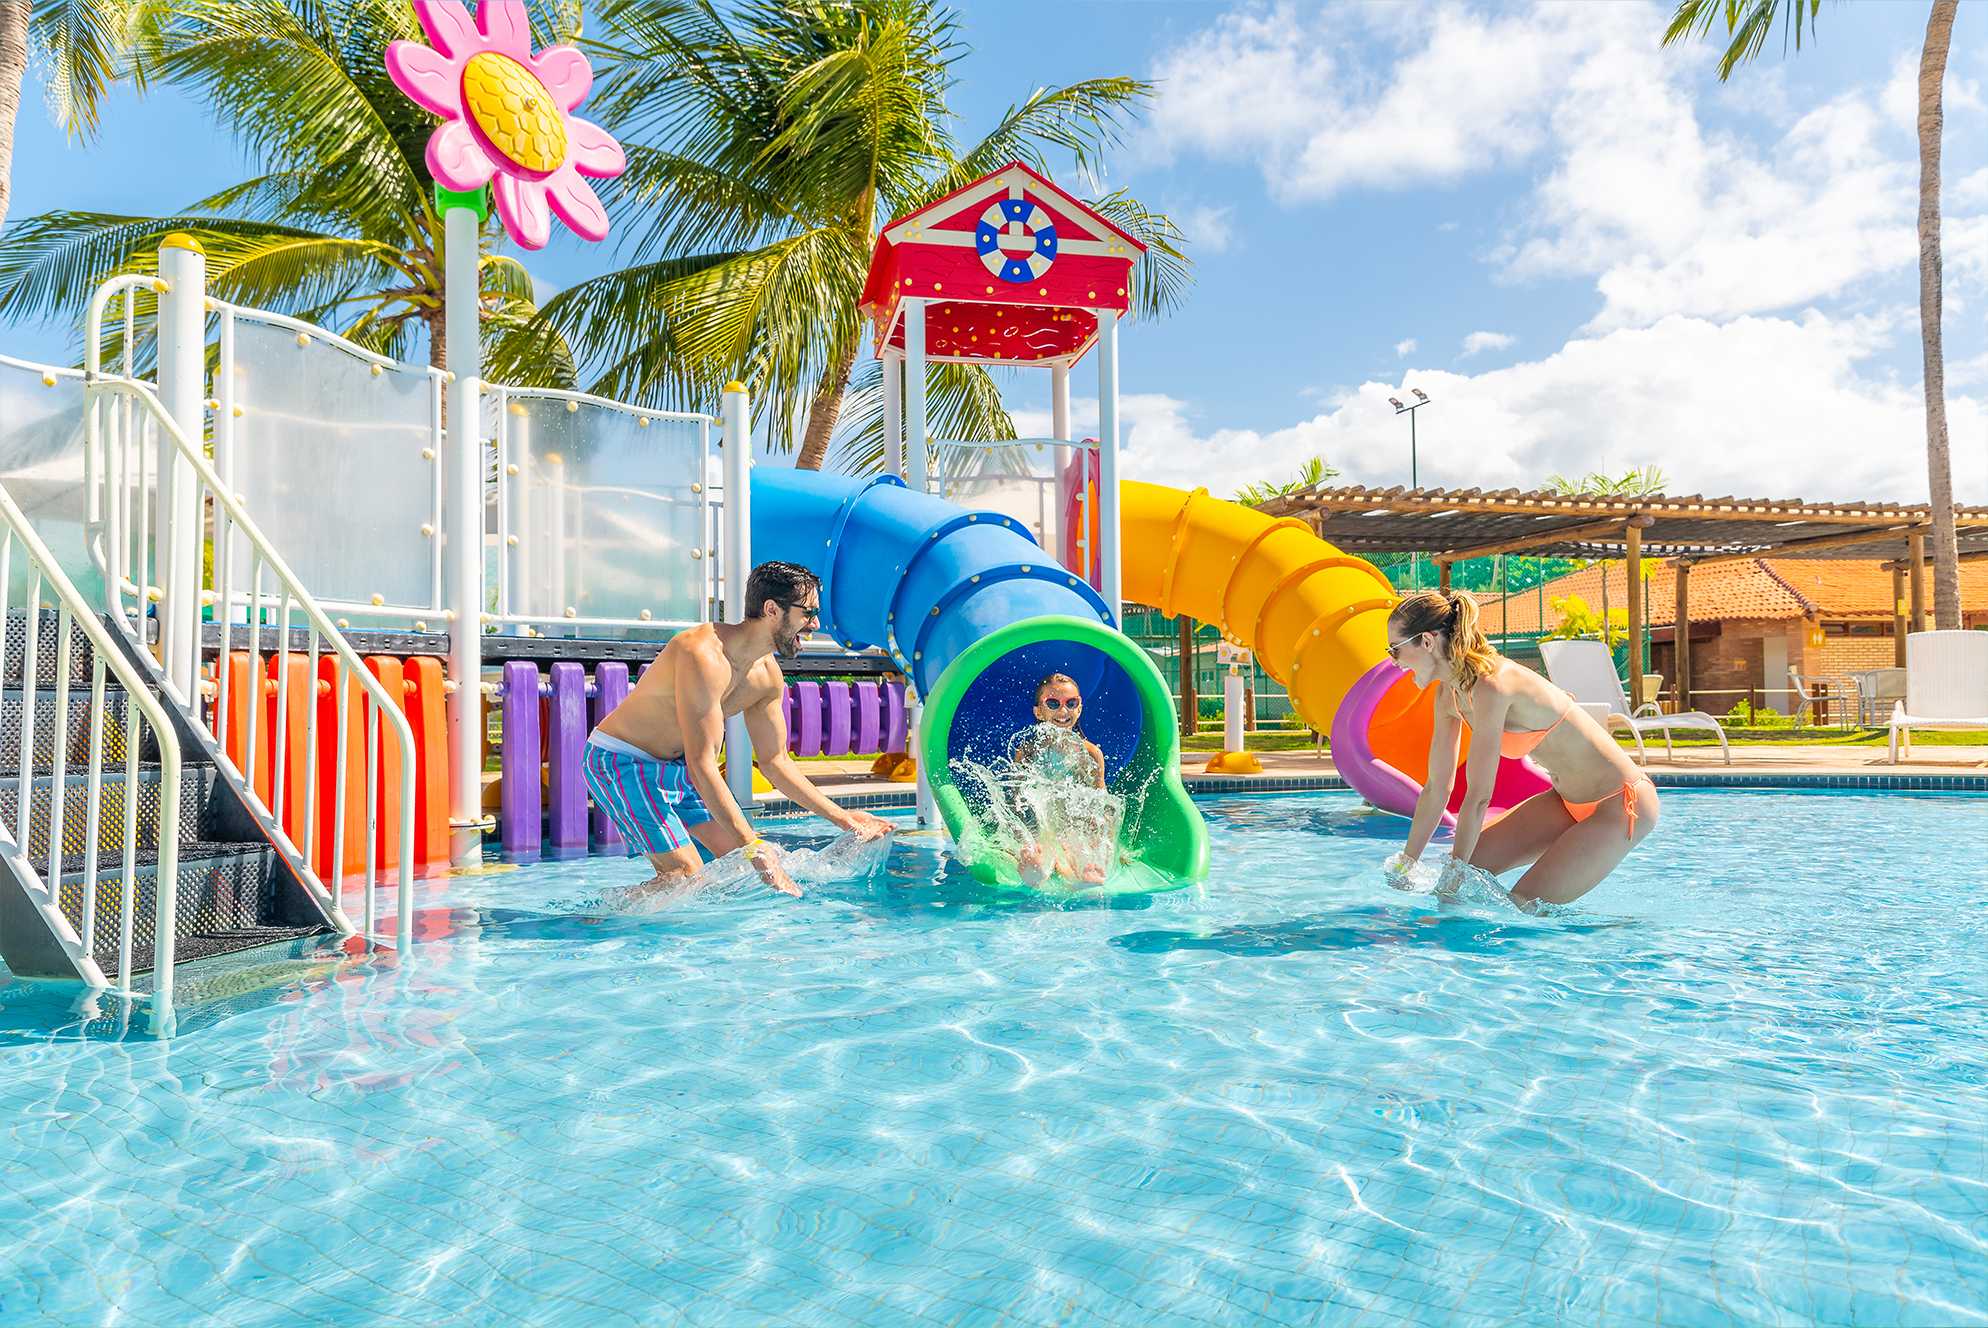 Em uma piscina infantil uma criança sorridente desce por um escorregador aquático azul, fazendo um grande splash ao entrar na água, onde um homem e uma mulher estão agachados esperando por ela. Ele é cercado por estruturas de playground coloridas.